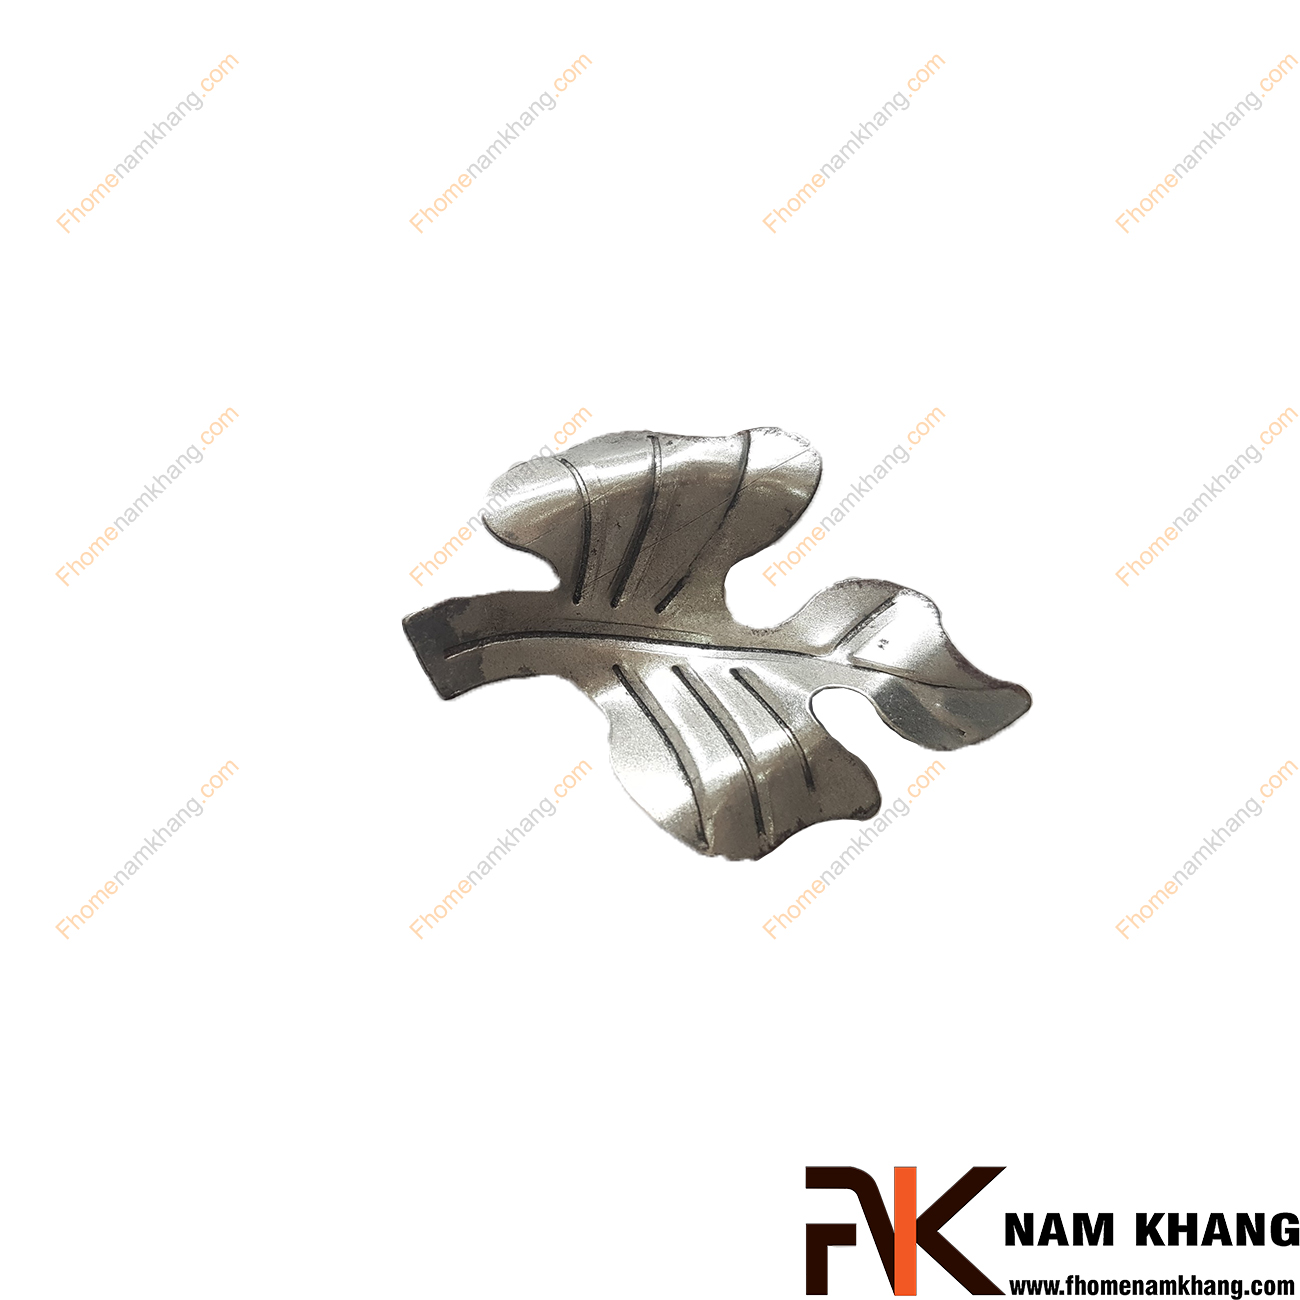 Hoa lá thép dập NKS-113T được tạo hình chiếc lá, là phụ kiện trang trí dành cho các sản phẩm sắt uốn mỹ thuật  Chi tiết được dập nỗi trên bề mặt, mô phỏng chính xác chi tiết thực tế.